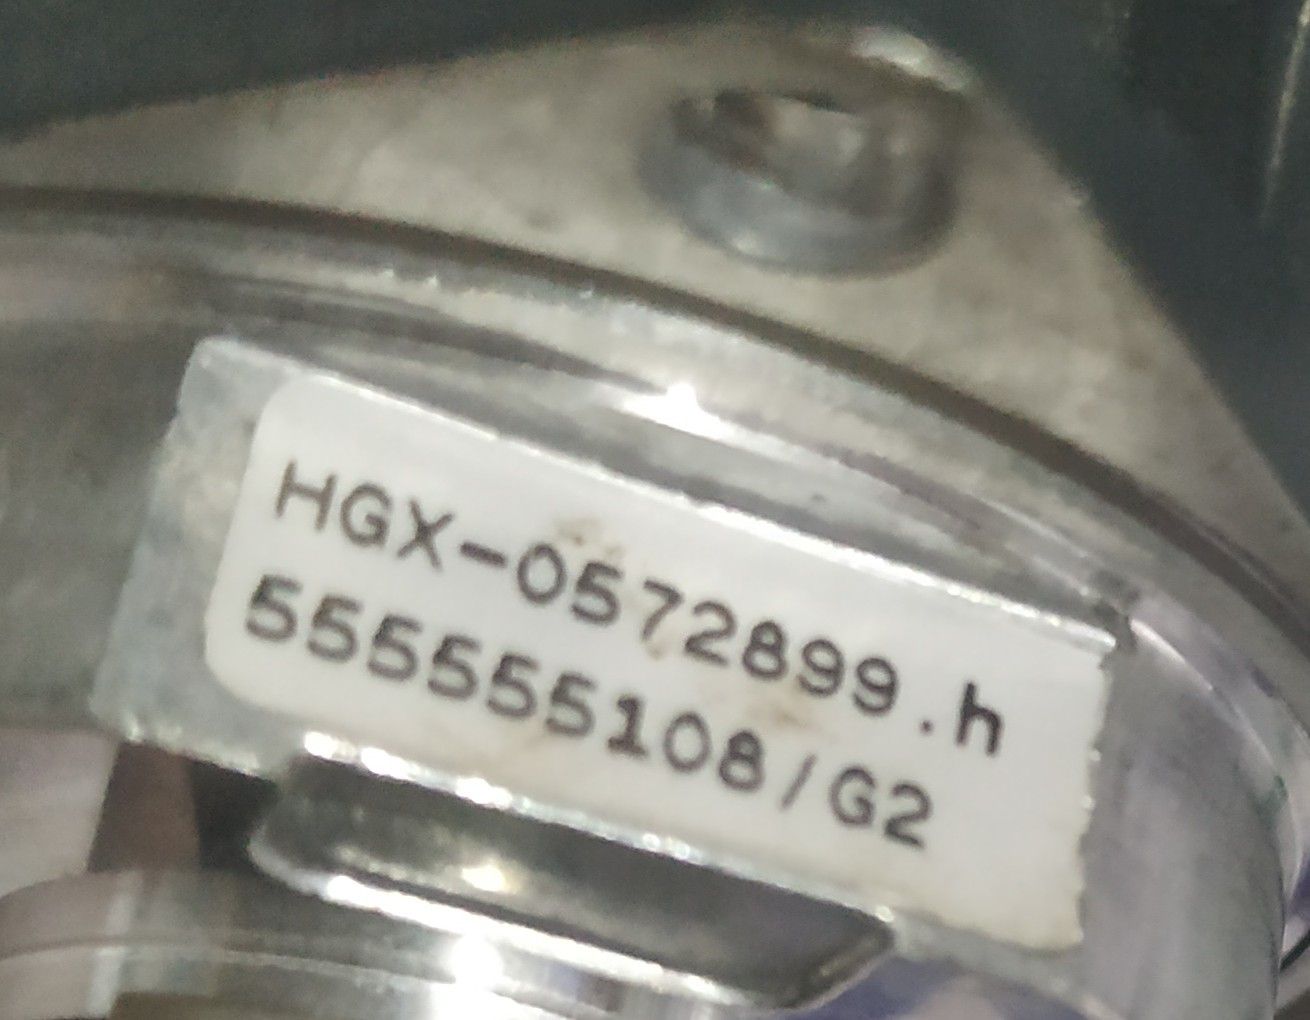 SIEMENS ENCODER HGX-0572899.H